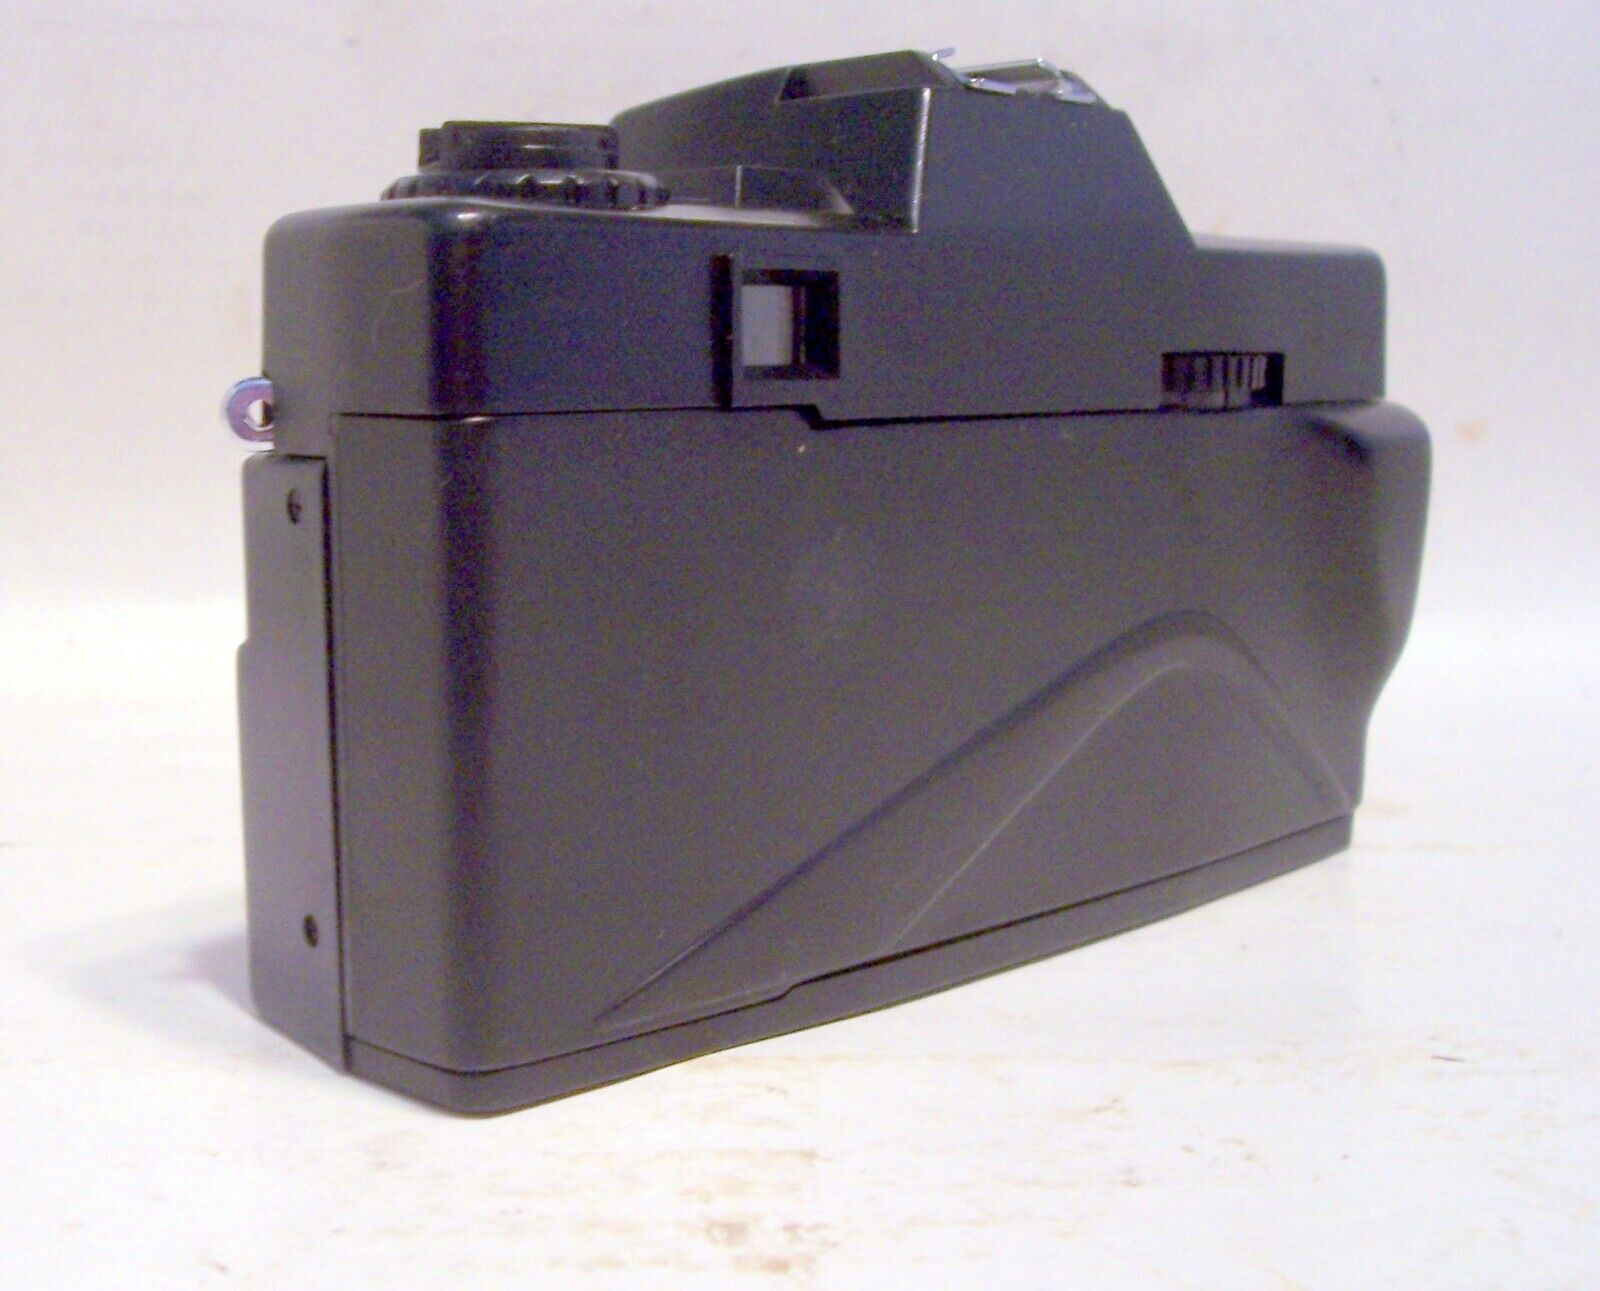 NEW Vintage Film 35mm Camera Nippon AR-4392F w/ Case, Strap, Sun Shade, Lens Cap Nippon ar 4392F - фотография #19